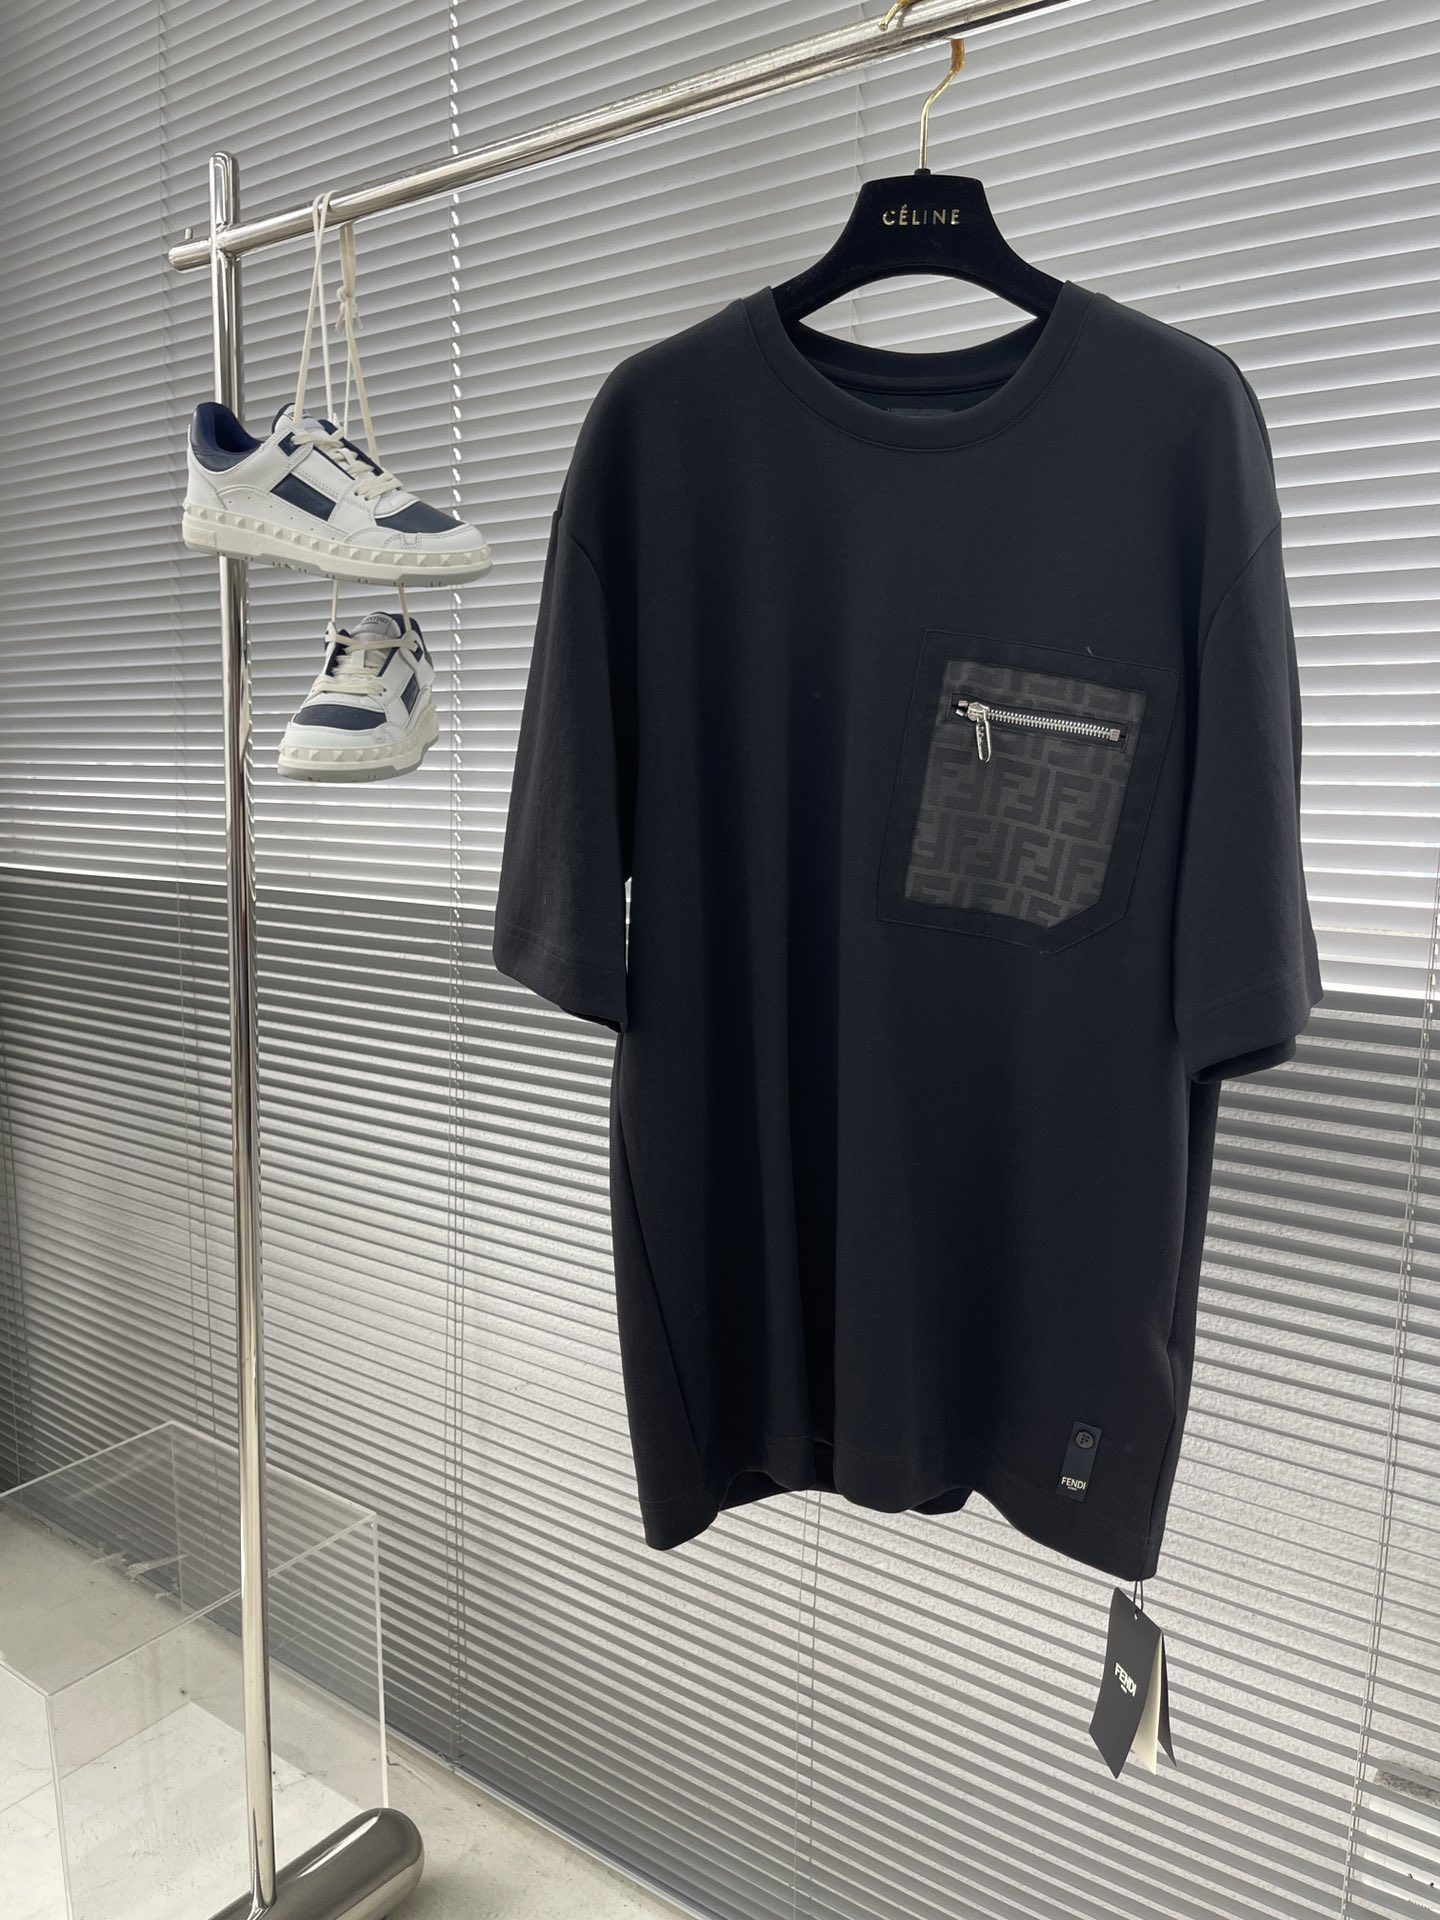 فيندي رفاهية
 ملابس تي شيرت مصمم نسخة طبق الأصل عالي الجودة
 خياطة الراتنجات كم قصير